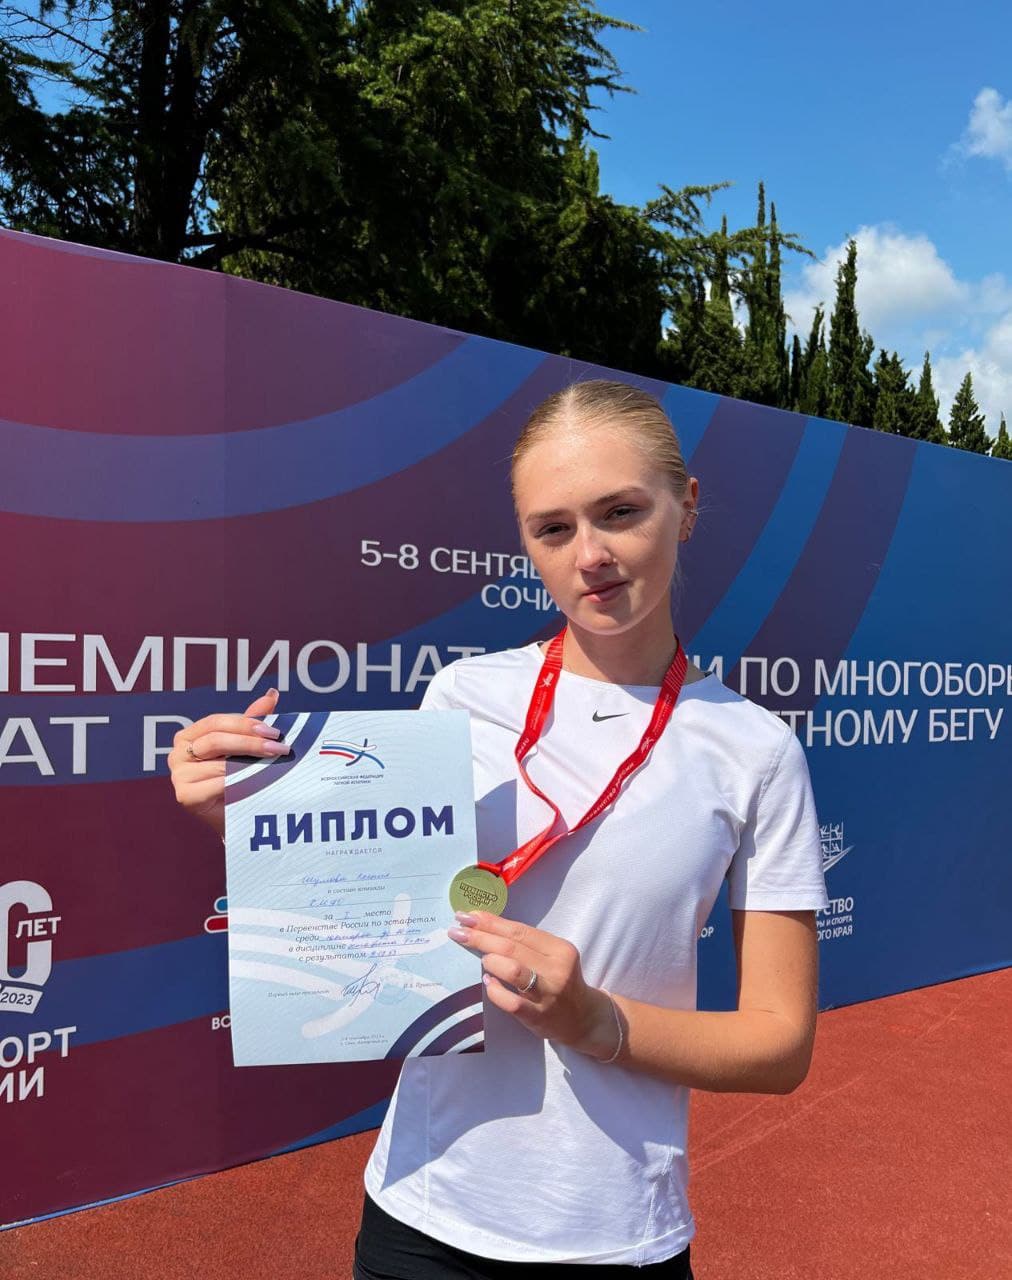 Нижневартовская спортсменка завоевала награду на первенстве России по легкой атлетике среди юниоров